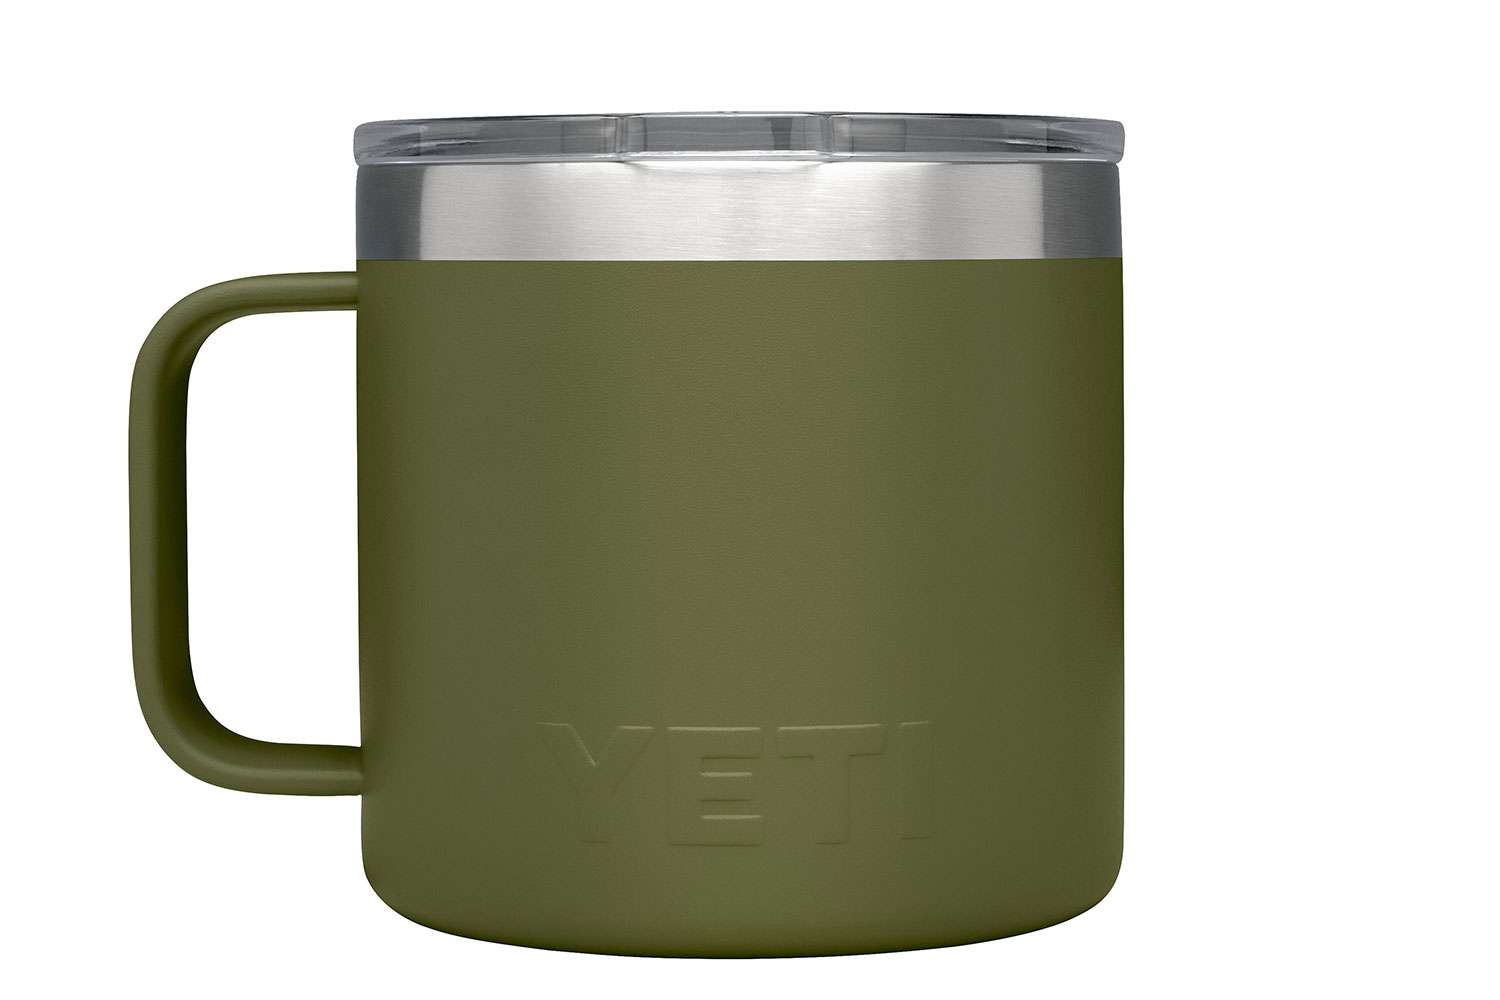 Yeti Rambler Mug, $24.99